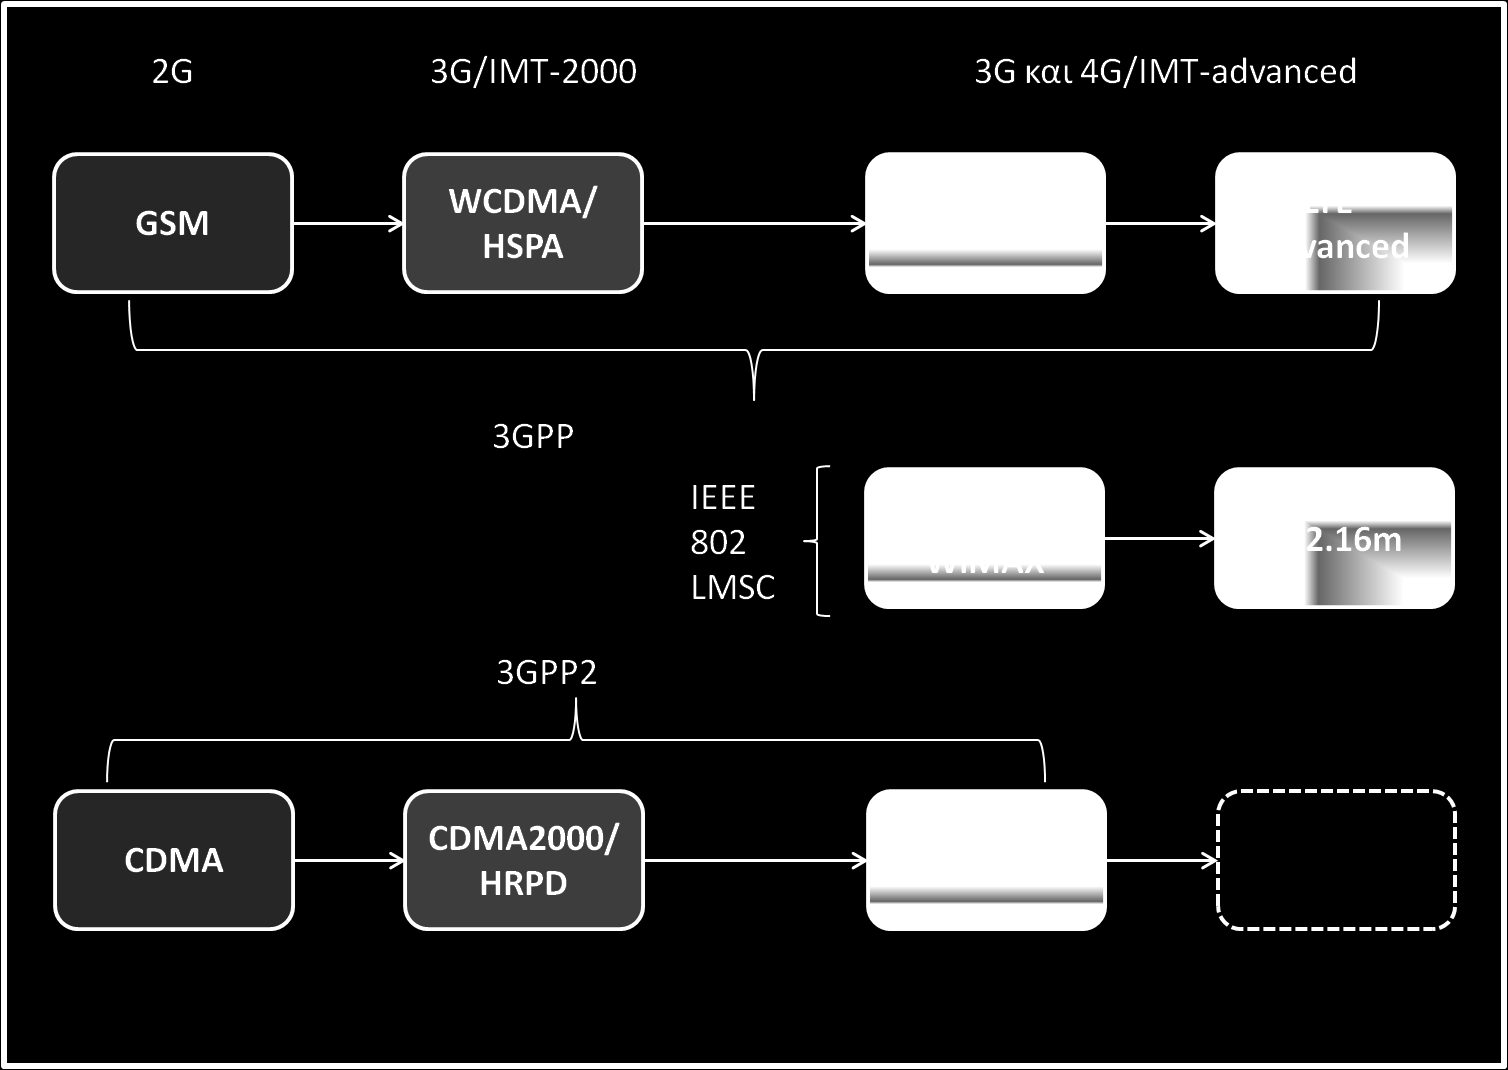 κινητικότητα, καθώς το πρότυπο IEEE 802.16e αναφέρεται ως Mobile WiMAX.